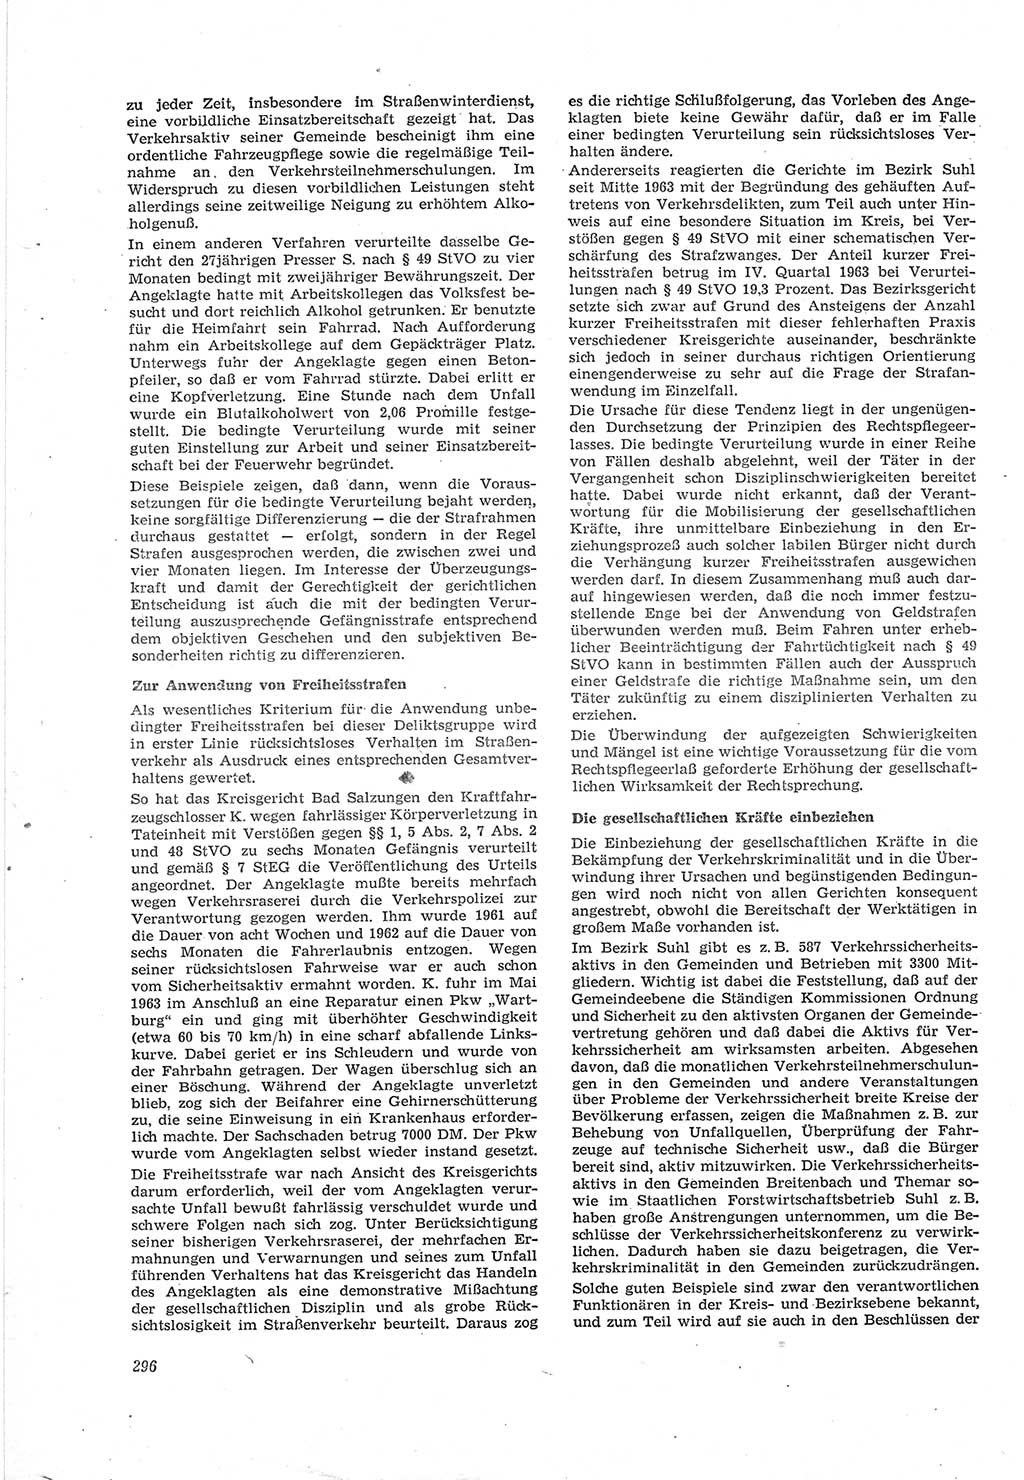 Neue Justiz (NJ), Zeitschrift für Recht und Rechtswissenschaft [Deutsche Demokratische Republik (DDR)], 18. Jahrgang 1964, Seite 296 (NJ DDR 1964, S. 296)